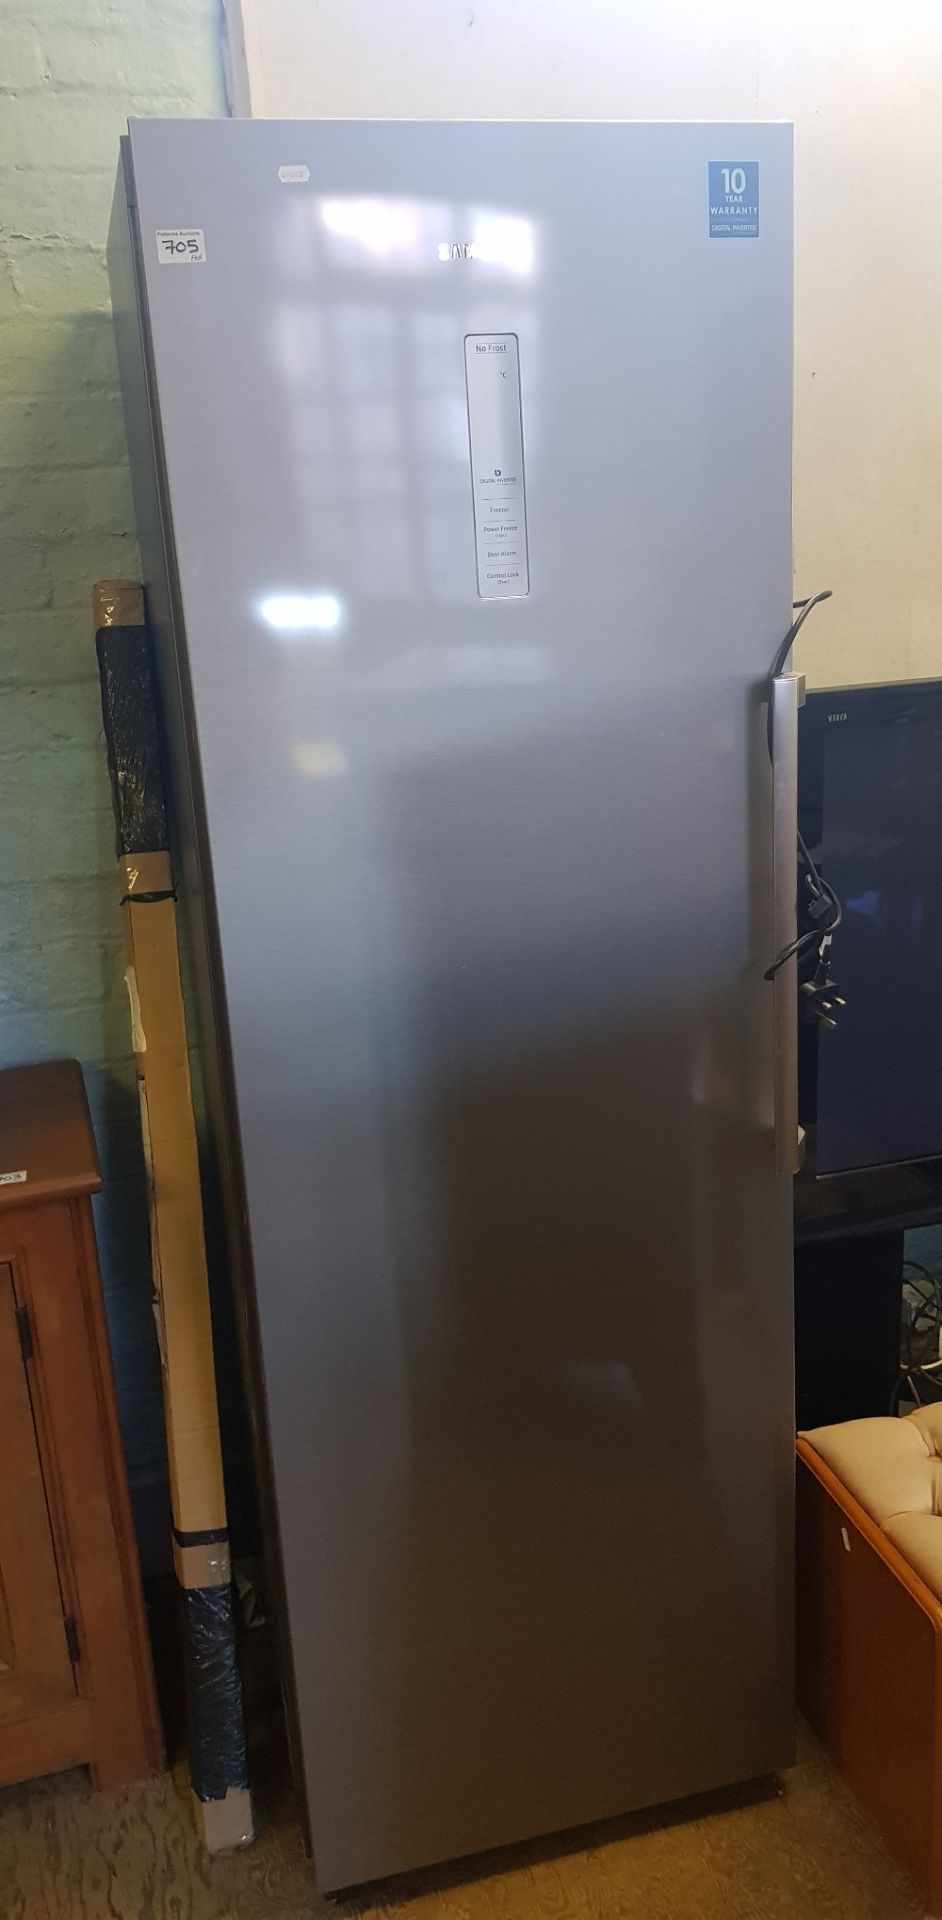 Samsung large fridge-freezer.